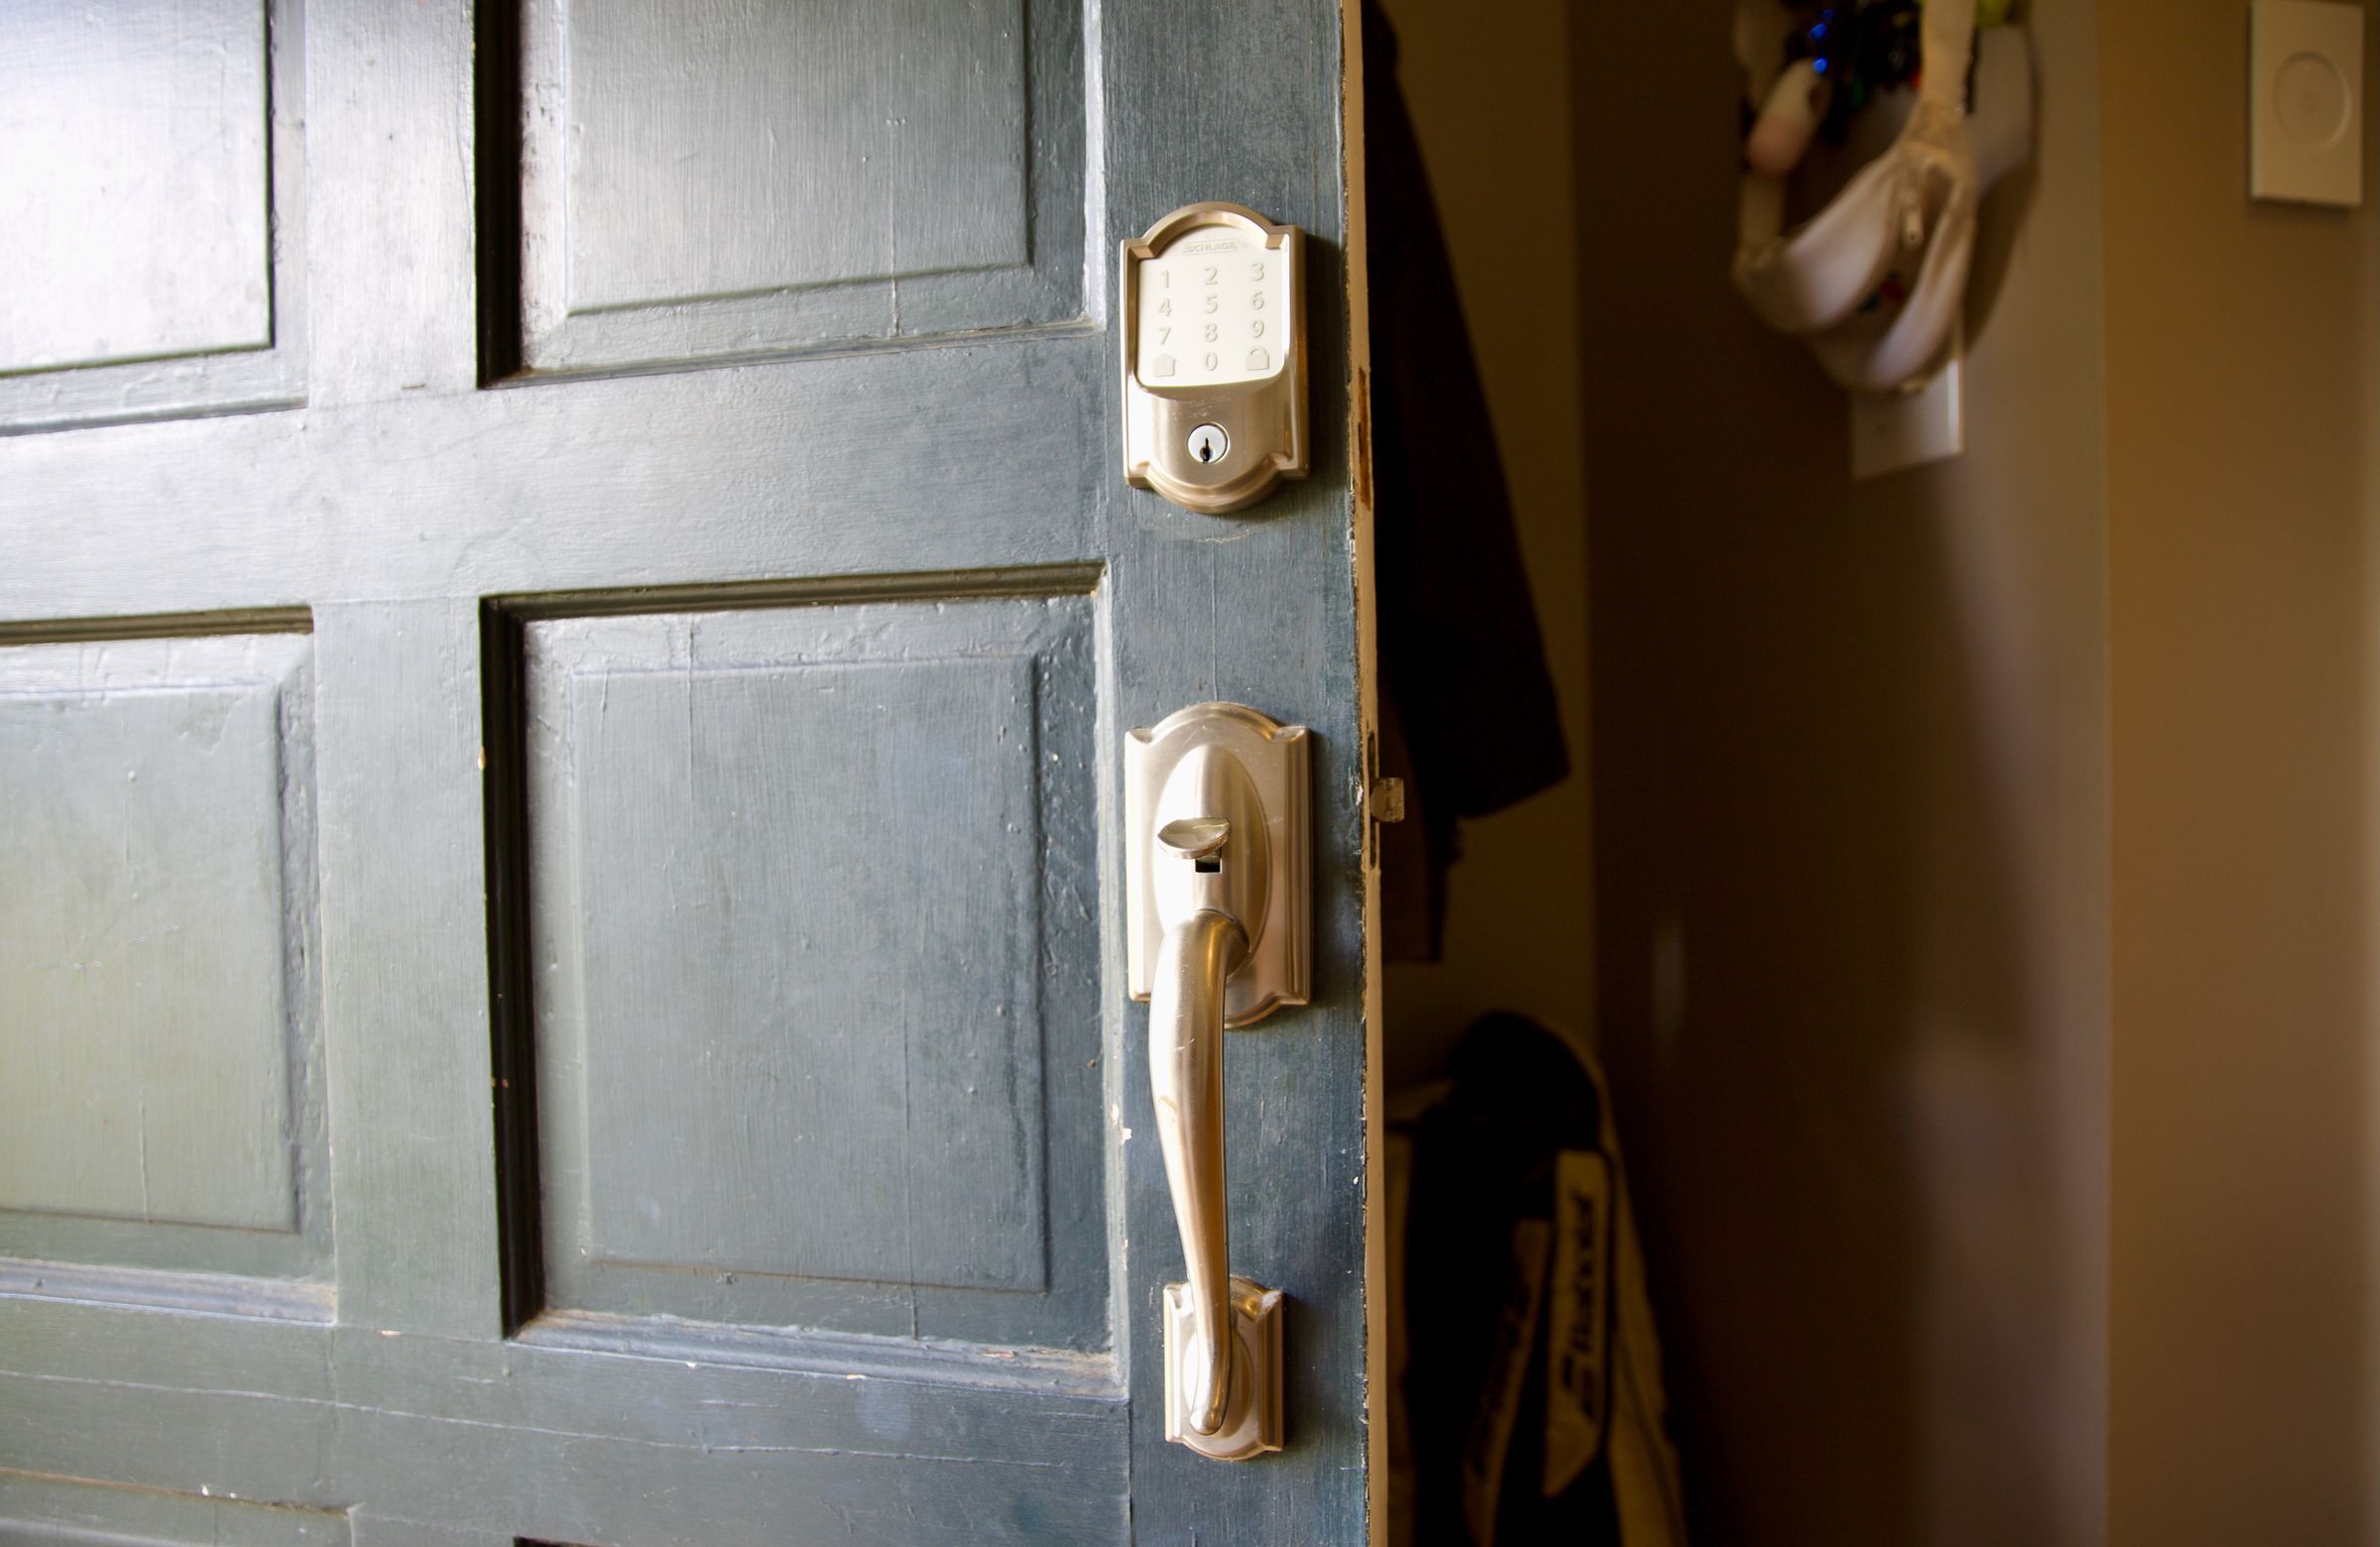 A door lock and door handle set on an open door